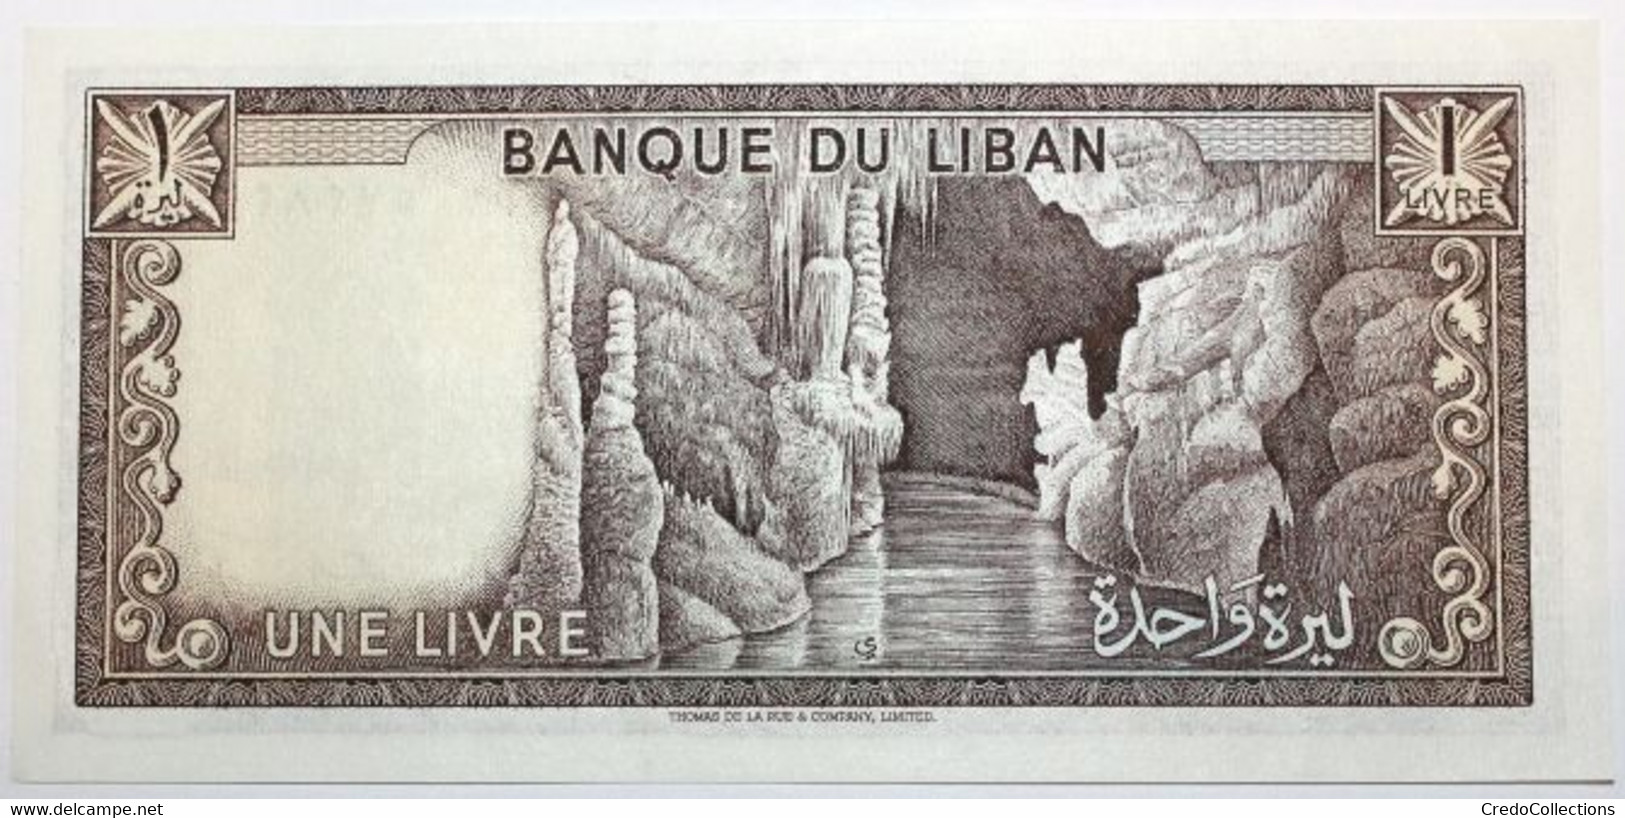 Liban - 1 Livre - 1980 - PICK 61c - NEUF - Liban